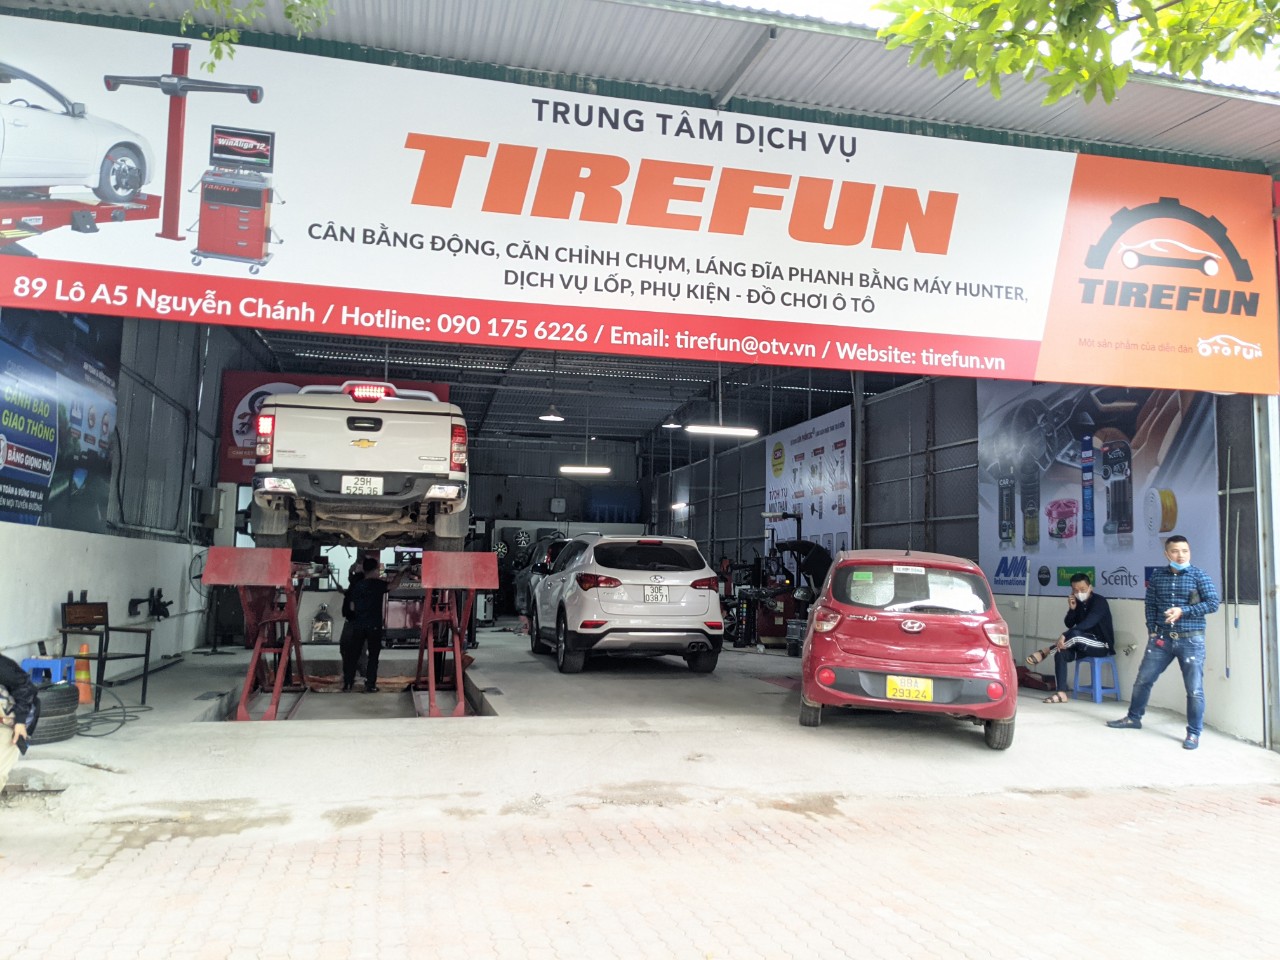 Tirefun - Trung tâm dịch vụ lốp của Otofun ảnh 1